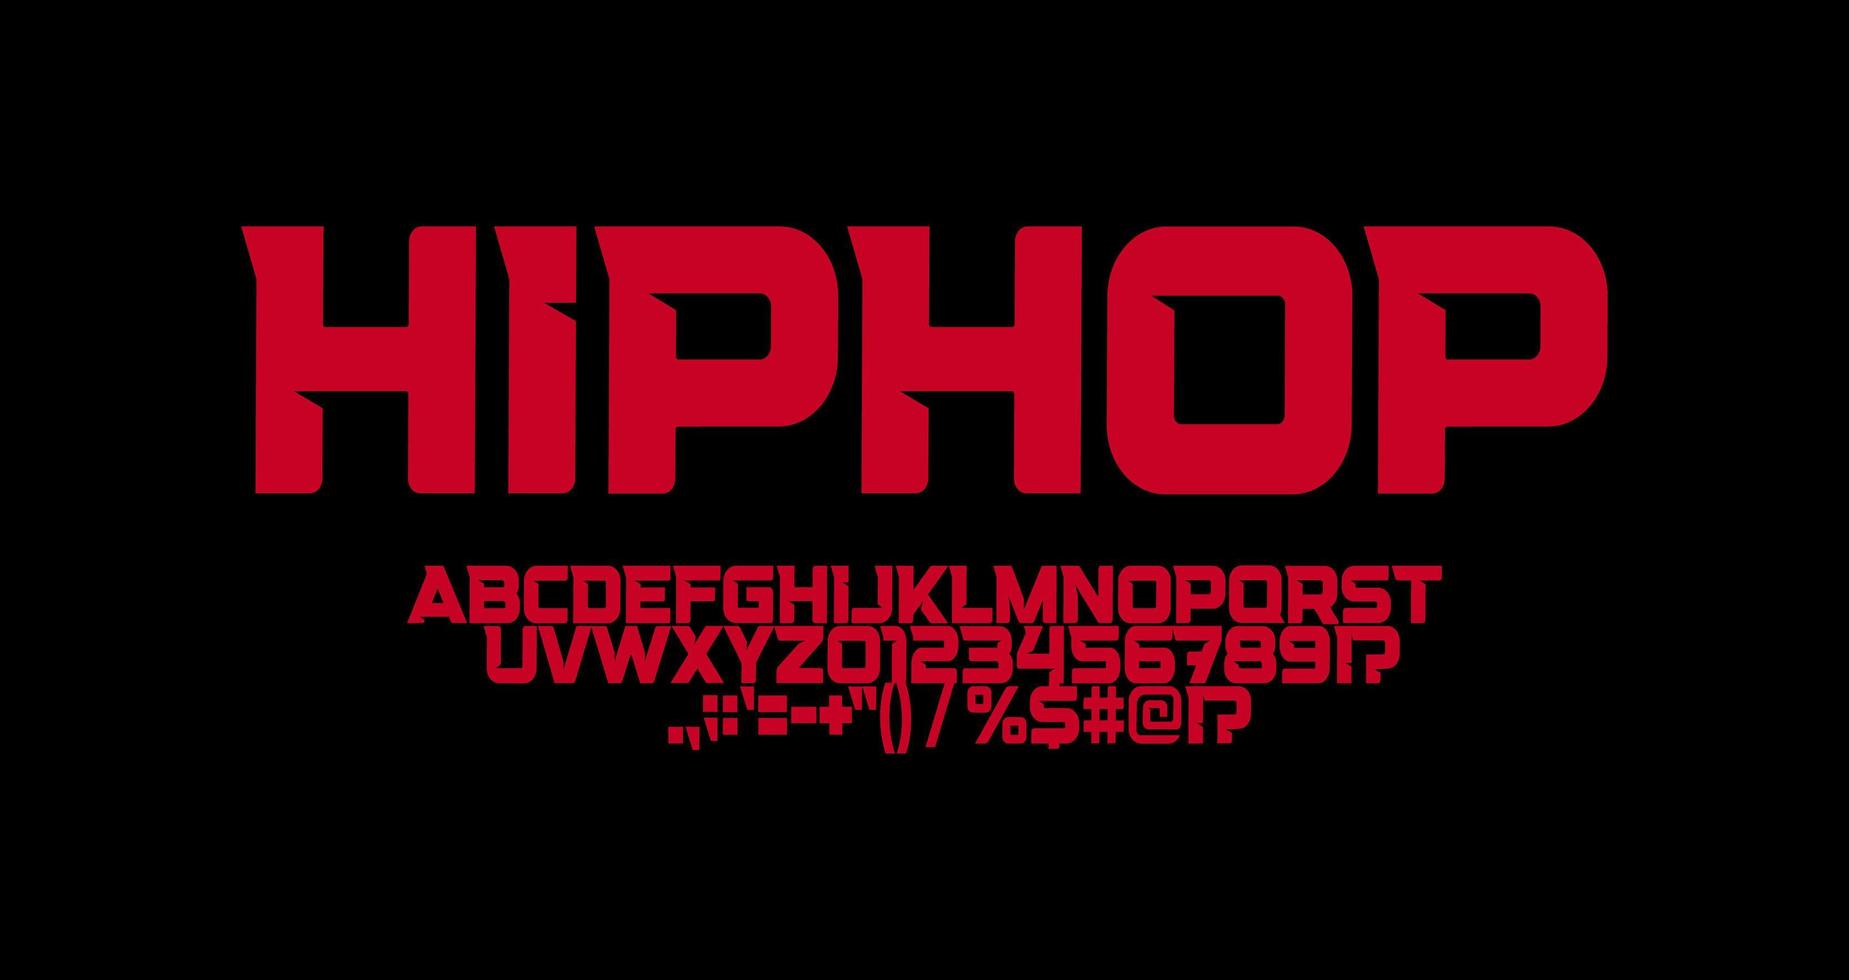 fuente de hip hop, letras de ángulos agudos, logotipo suburbano fuerte y tipografía de camisetas. diseño tipográfico futurista minimalista. tipografía geométrica del vector del alfabeto rojo moderno